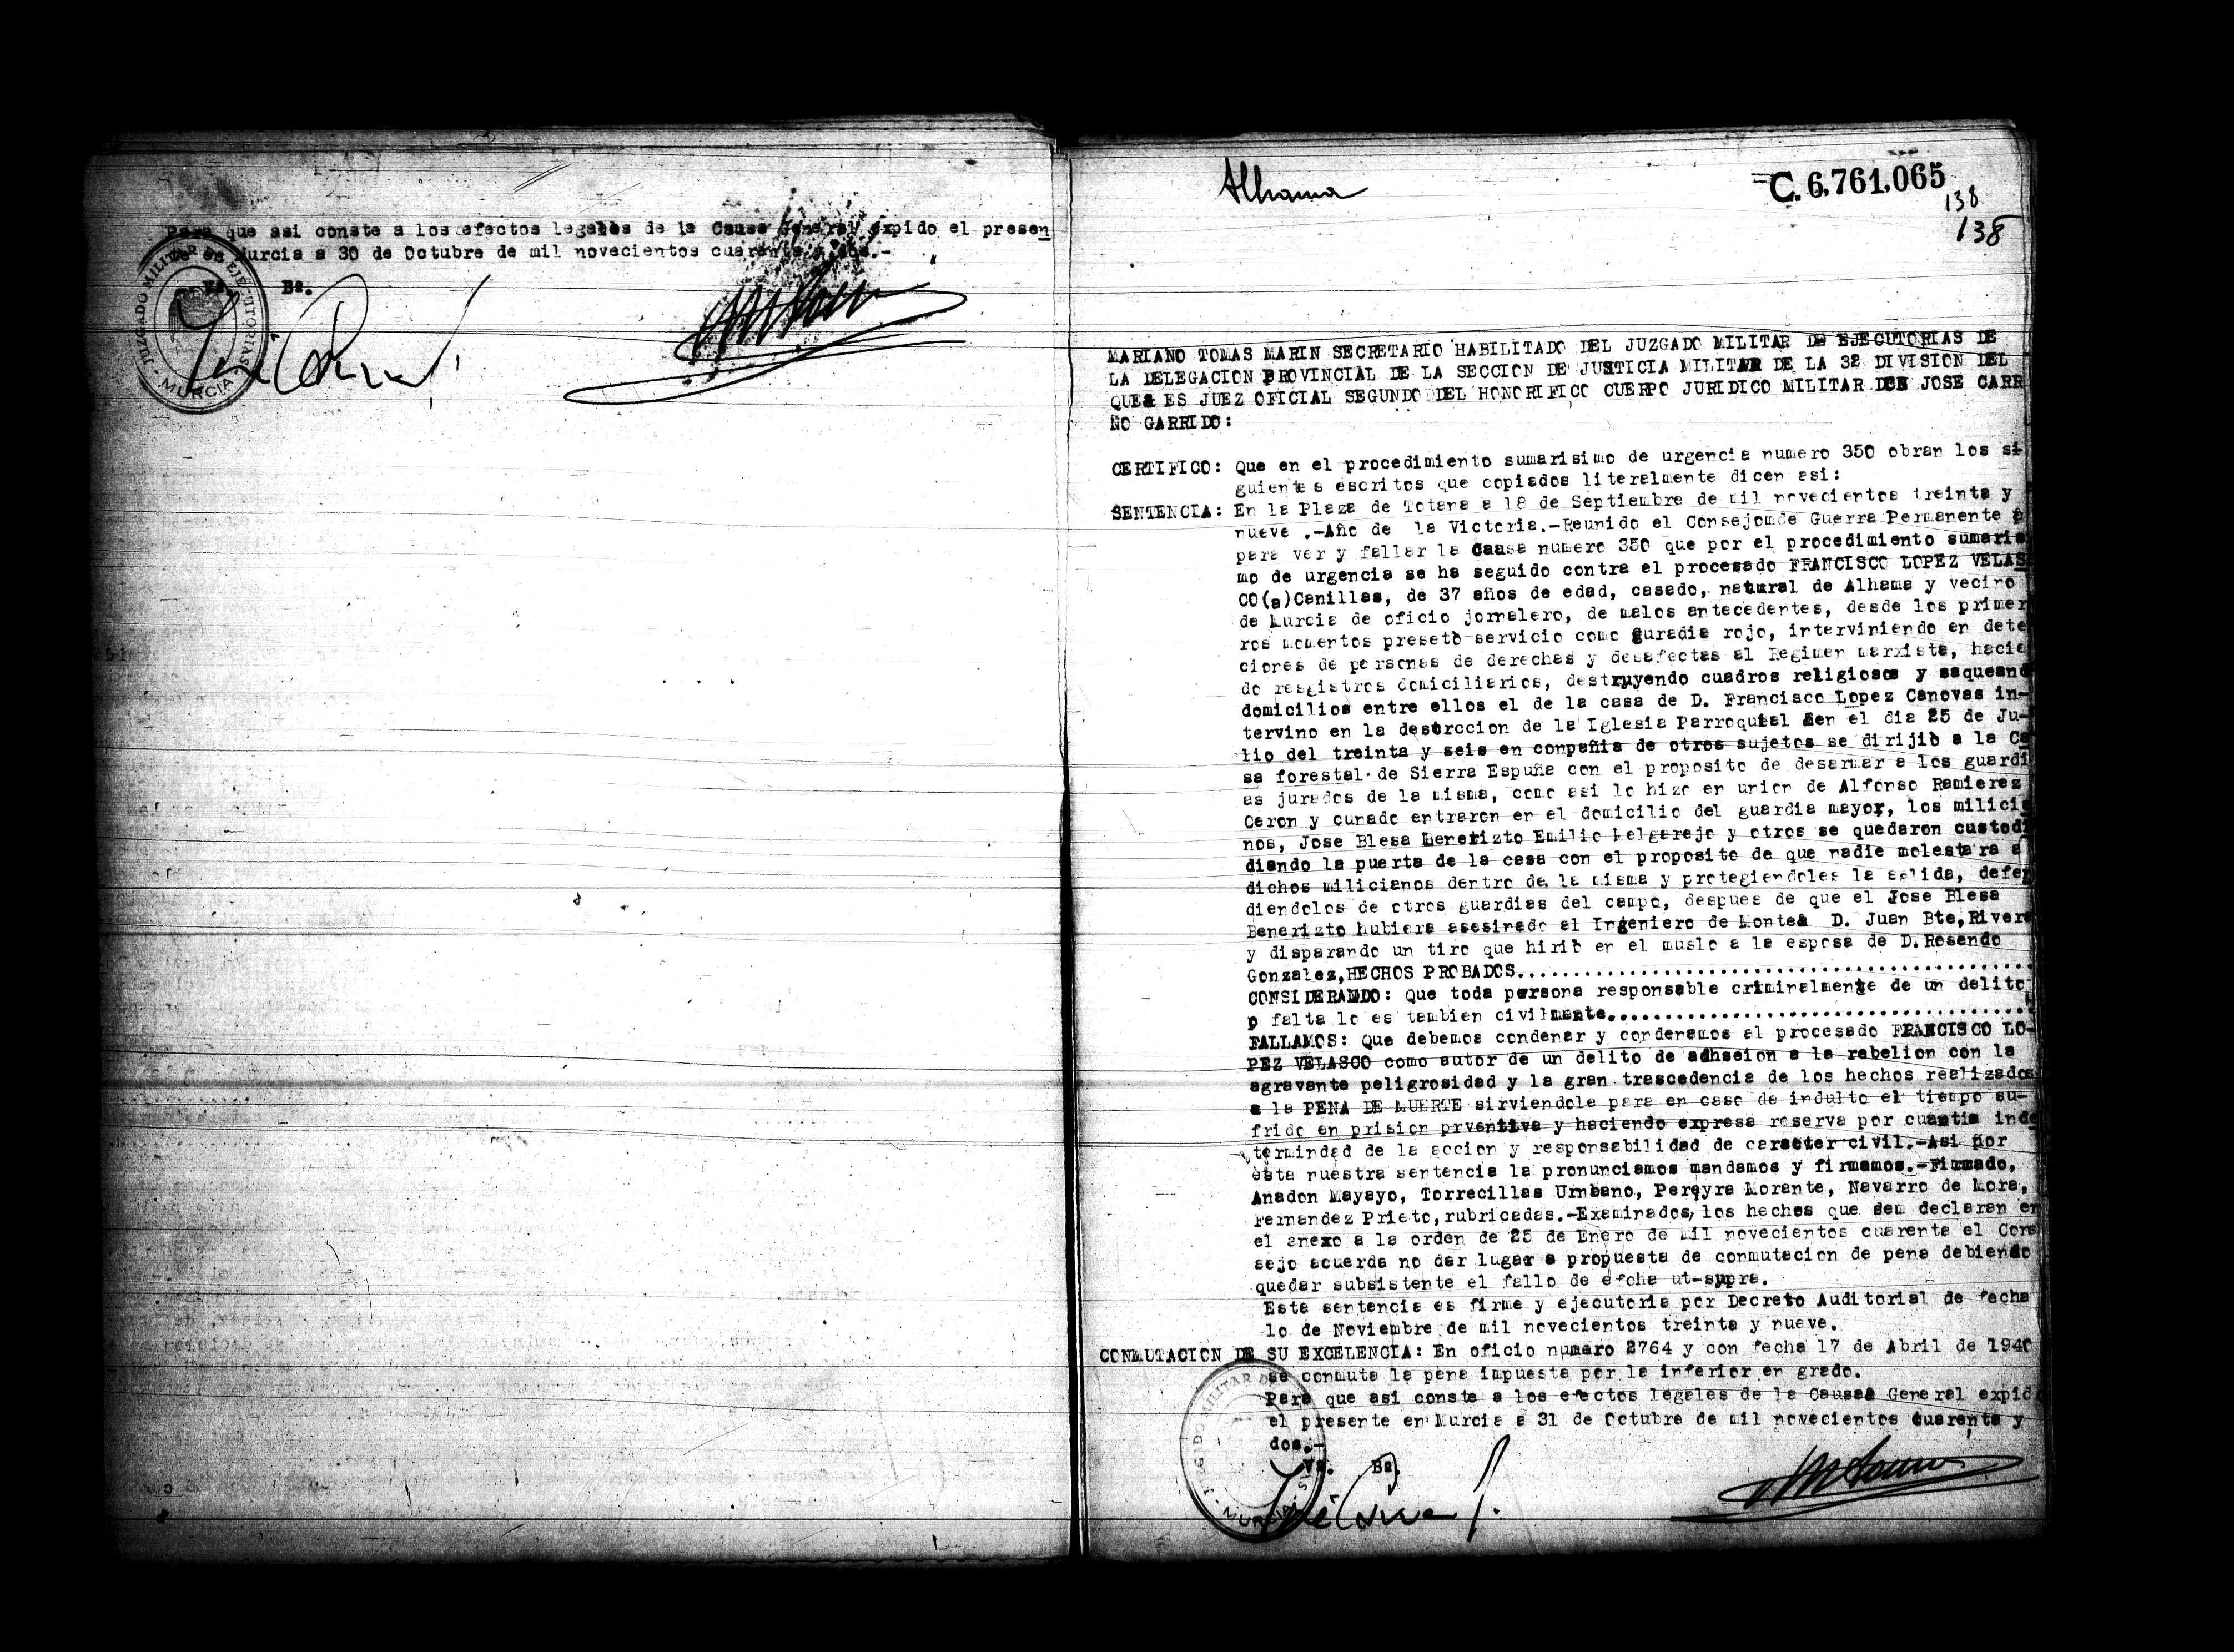 Certificado de la sentencia pronunciada contra Francisco López Velasco, causa 350, el 18 de septiembre de 1939 en Totana.